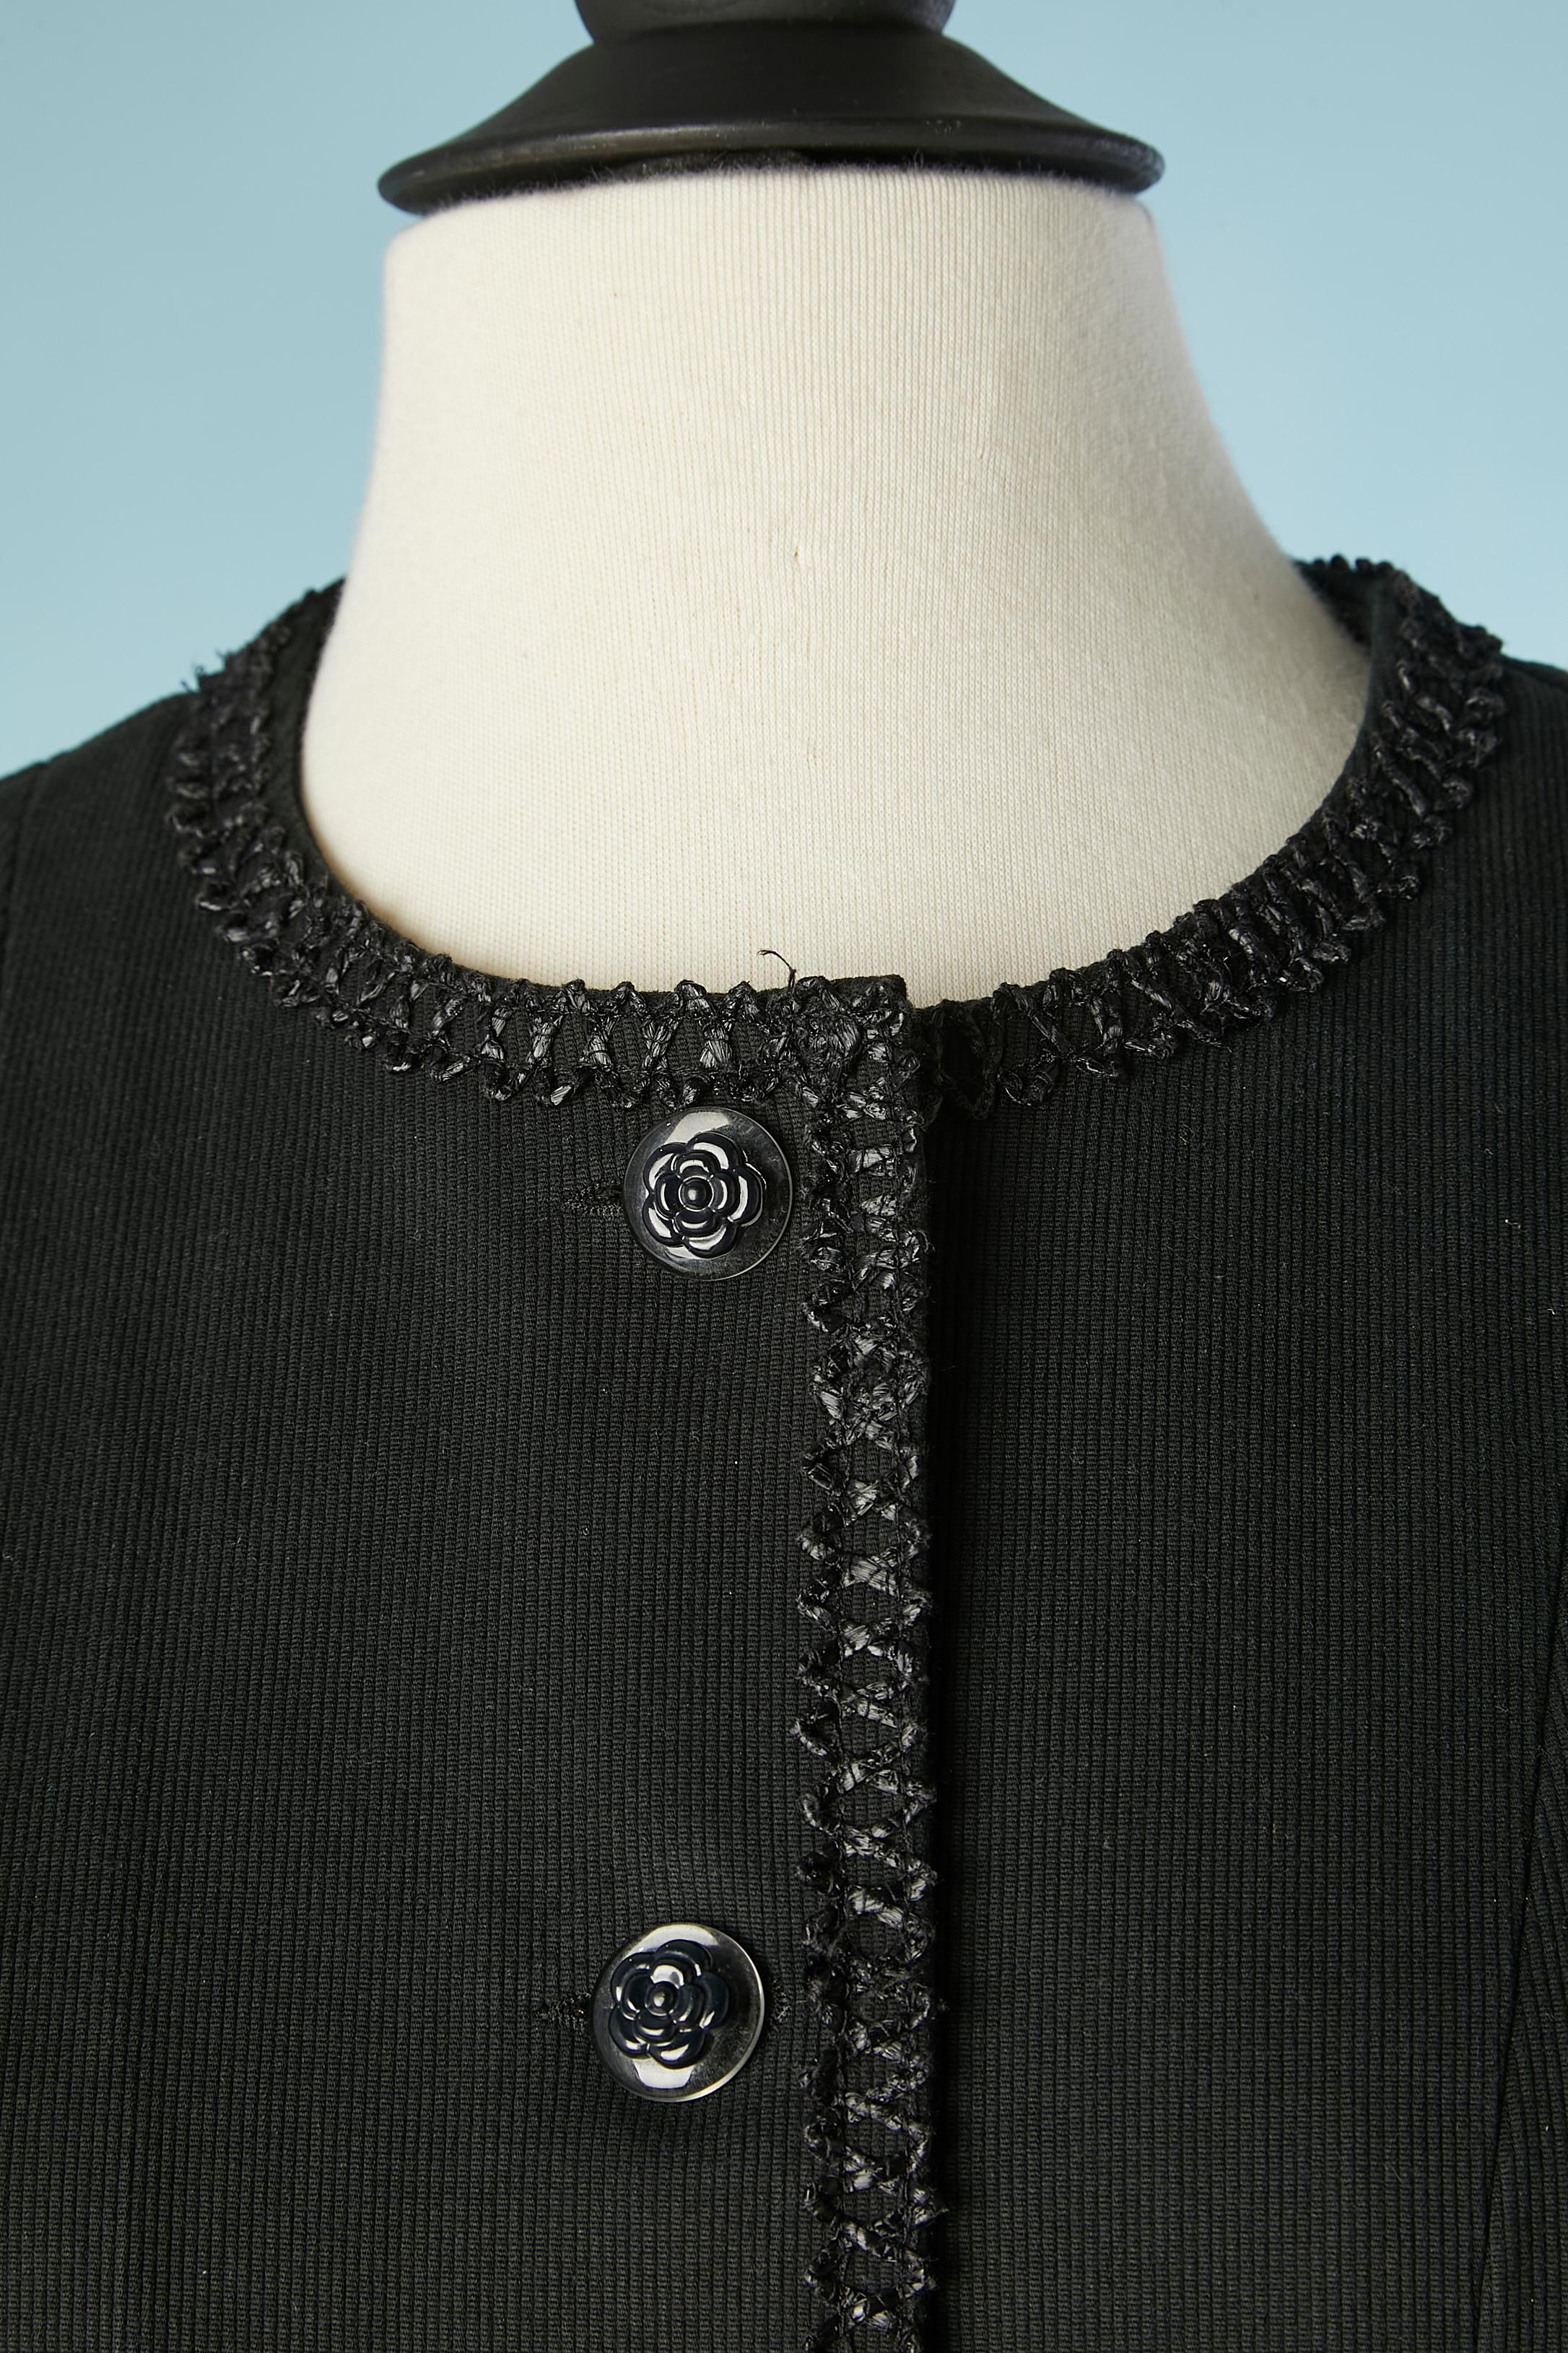 Combinaison jupe en coton noir avec bord en raphia et boutons camélia. Pas de doublure mais un passepoil à l'intérieur.
TAILLE M